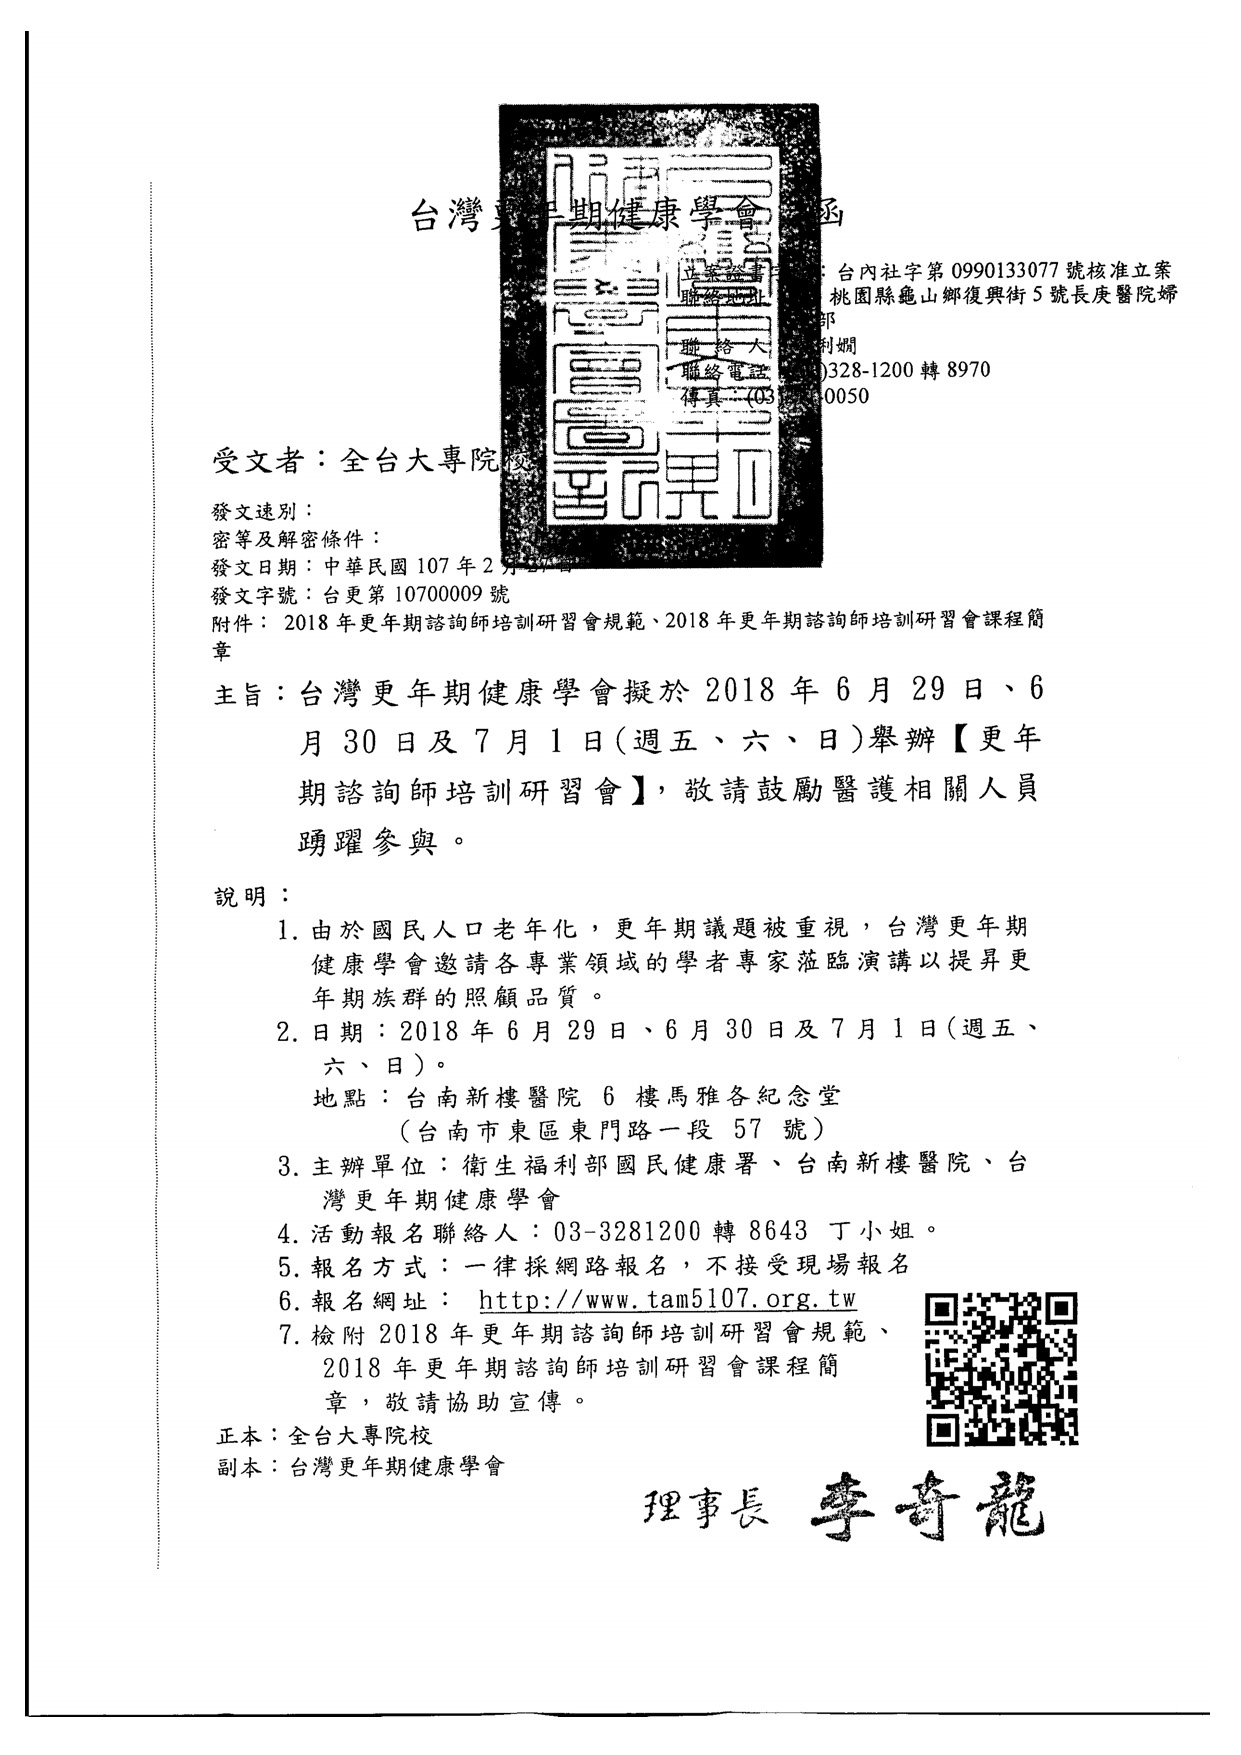 1070314台灣更年期健康學會課程公文 頁面 1